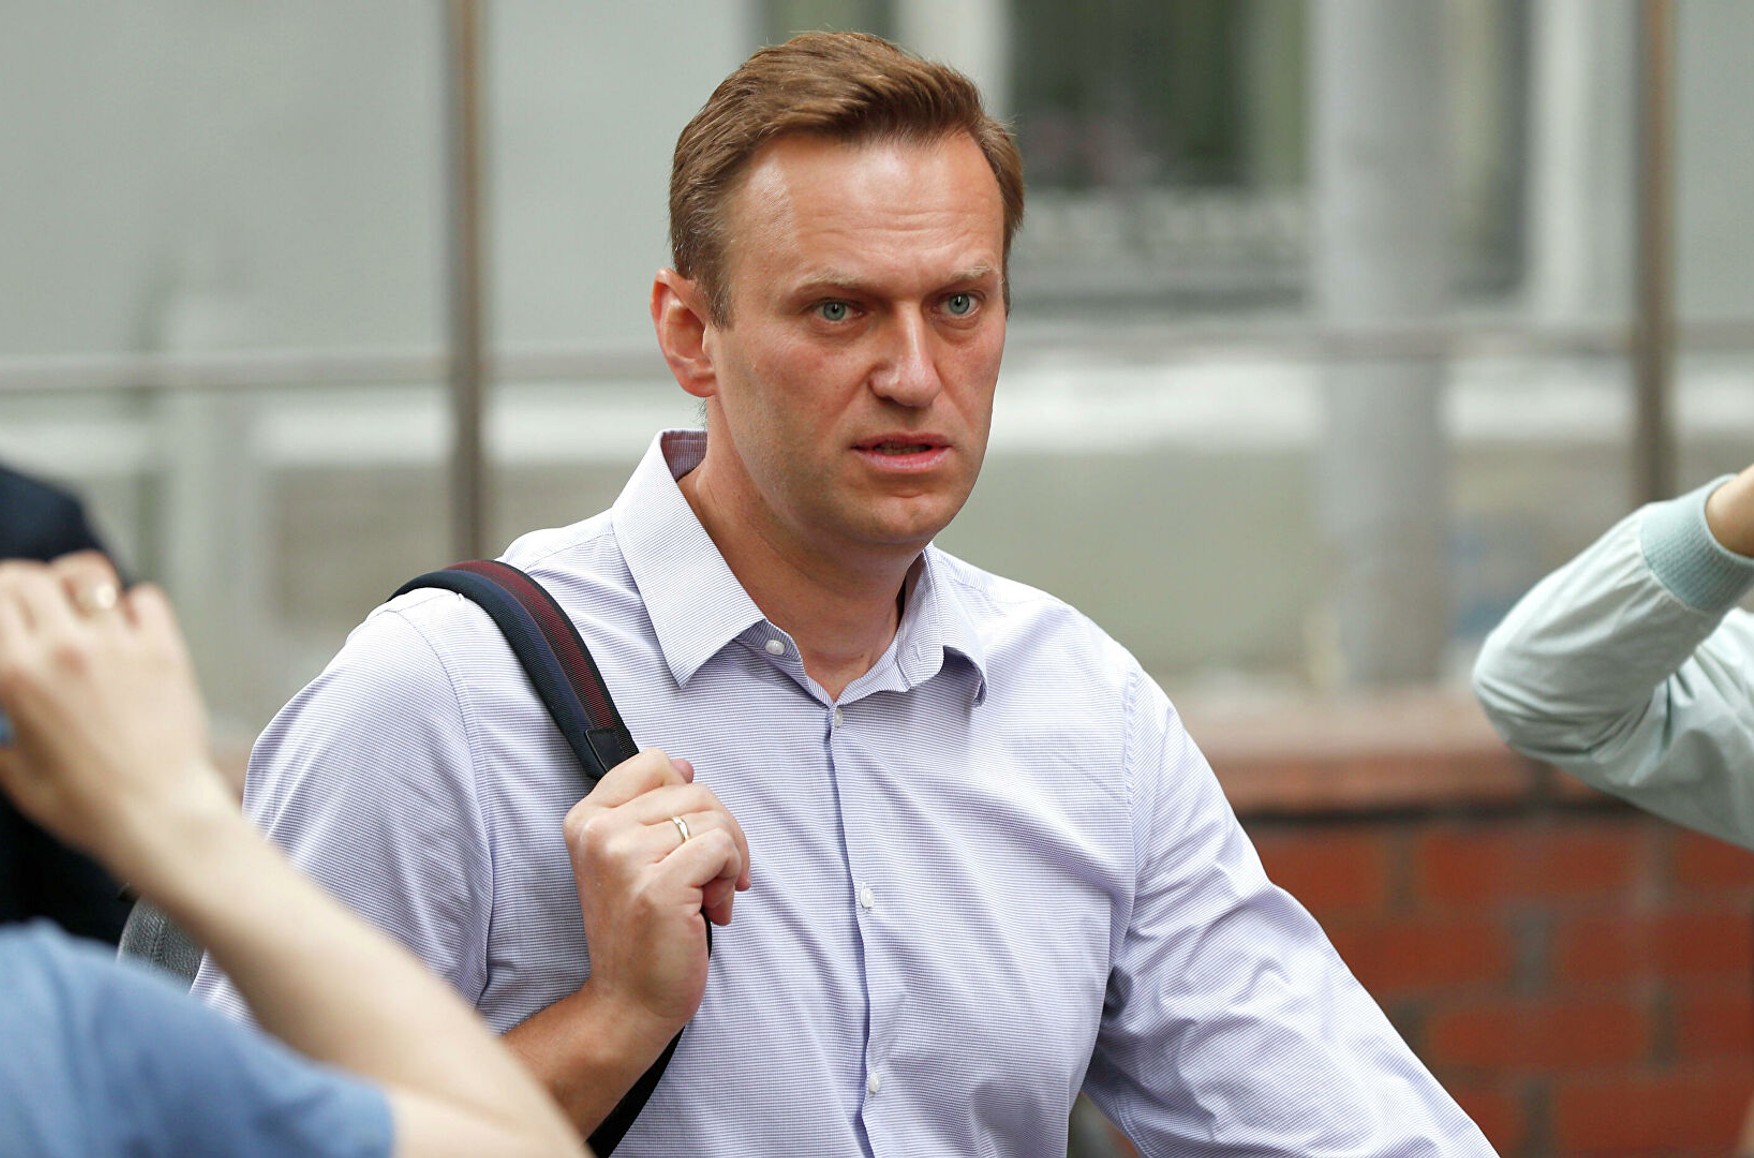 Слідчі перевіряють висловлювання Навального про владу на екстремізм